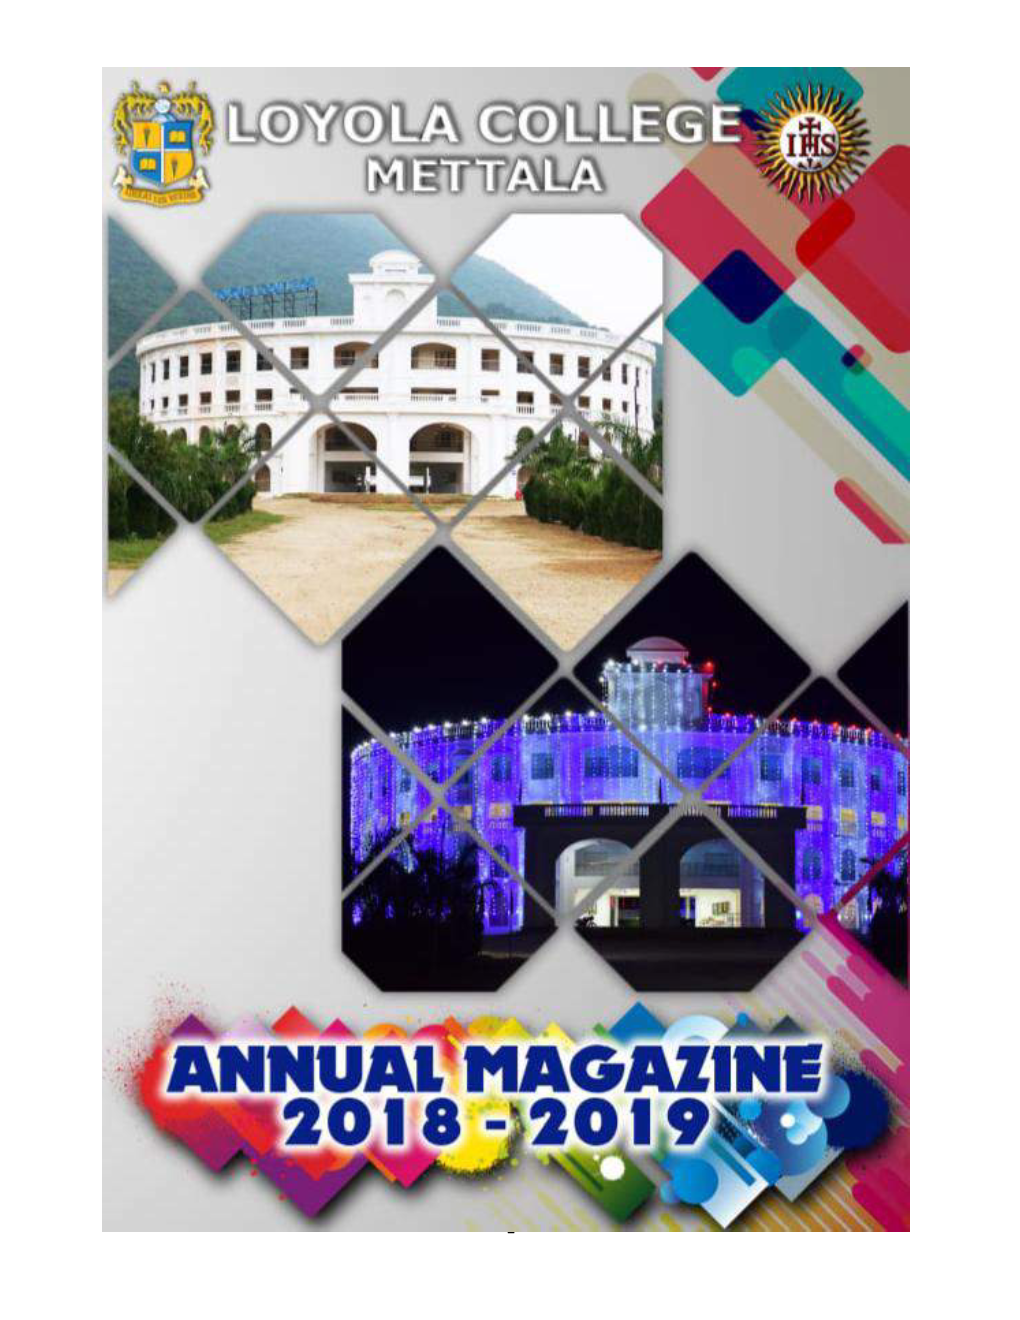 Annual Magazine 2018-2019